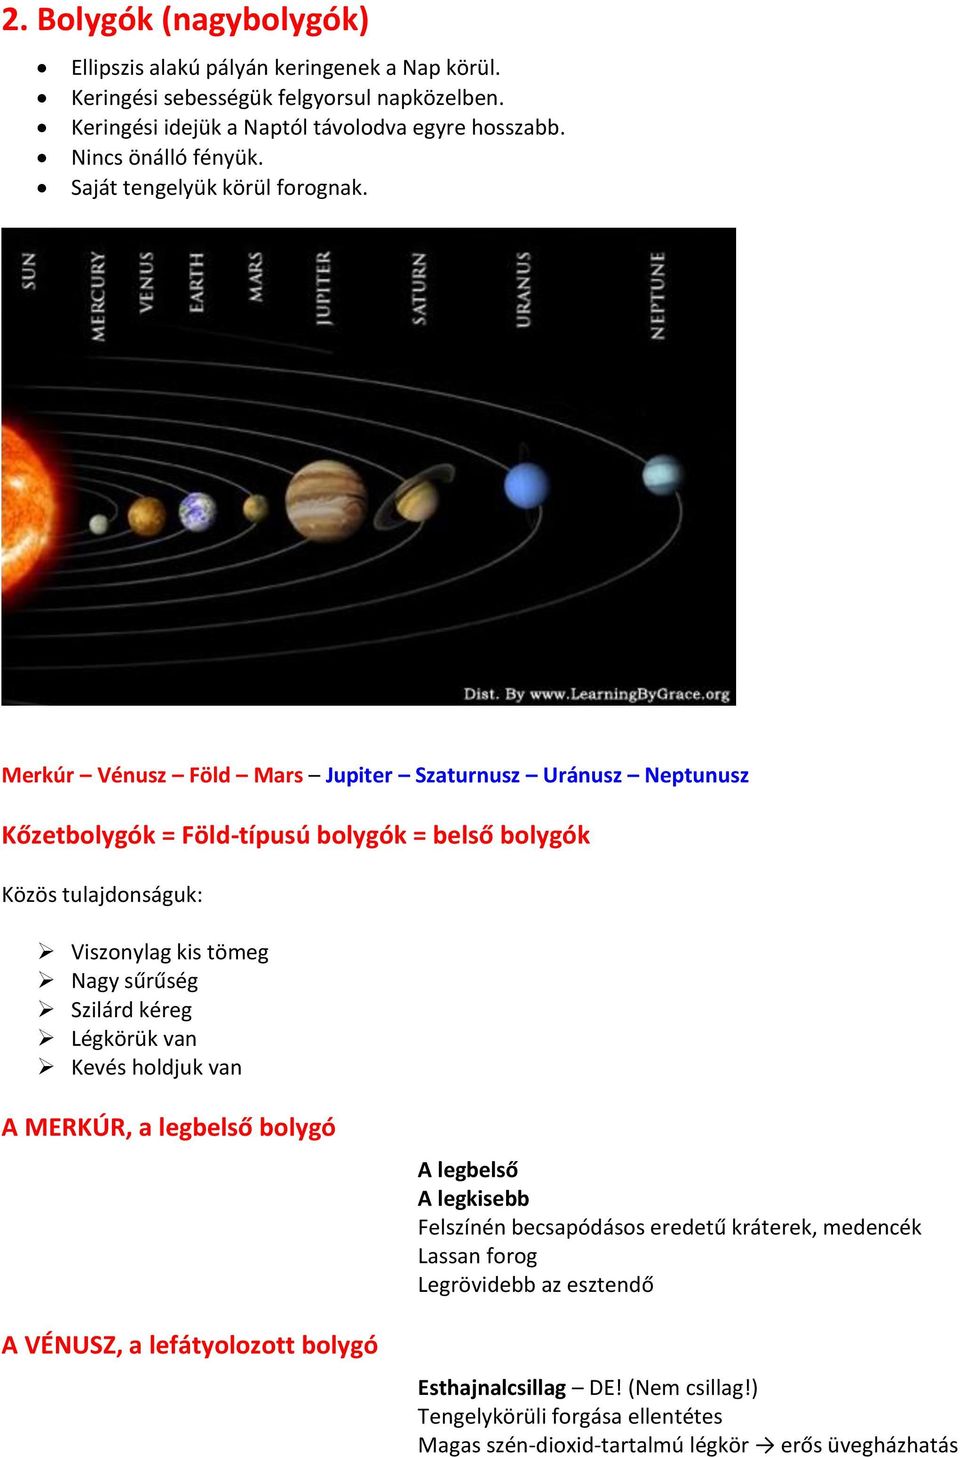 Merkúr Vénusz Föld Mars Jupiter Szaturnusz Uránusz Neptunusz Kőzetbolygók = Föld-típusú bolygók = belső bolygók Közös tulajdonságuk: Viszonylag kis tömeg Nagy sűrűség Szilárd kéreg